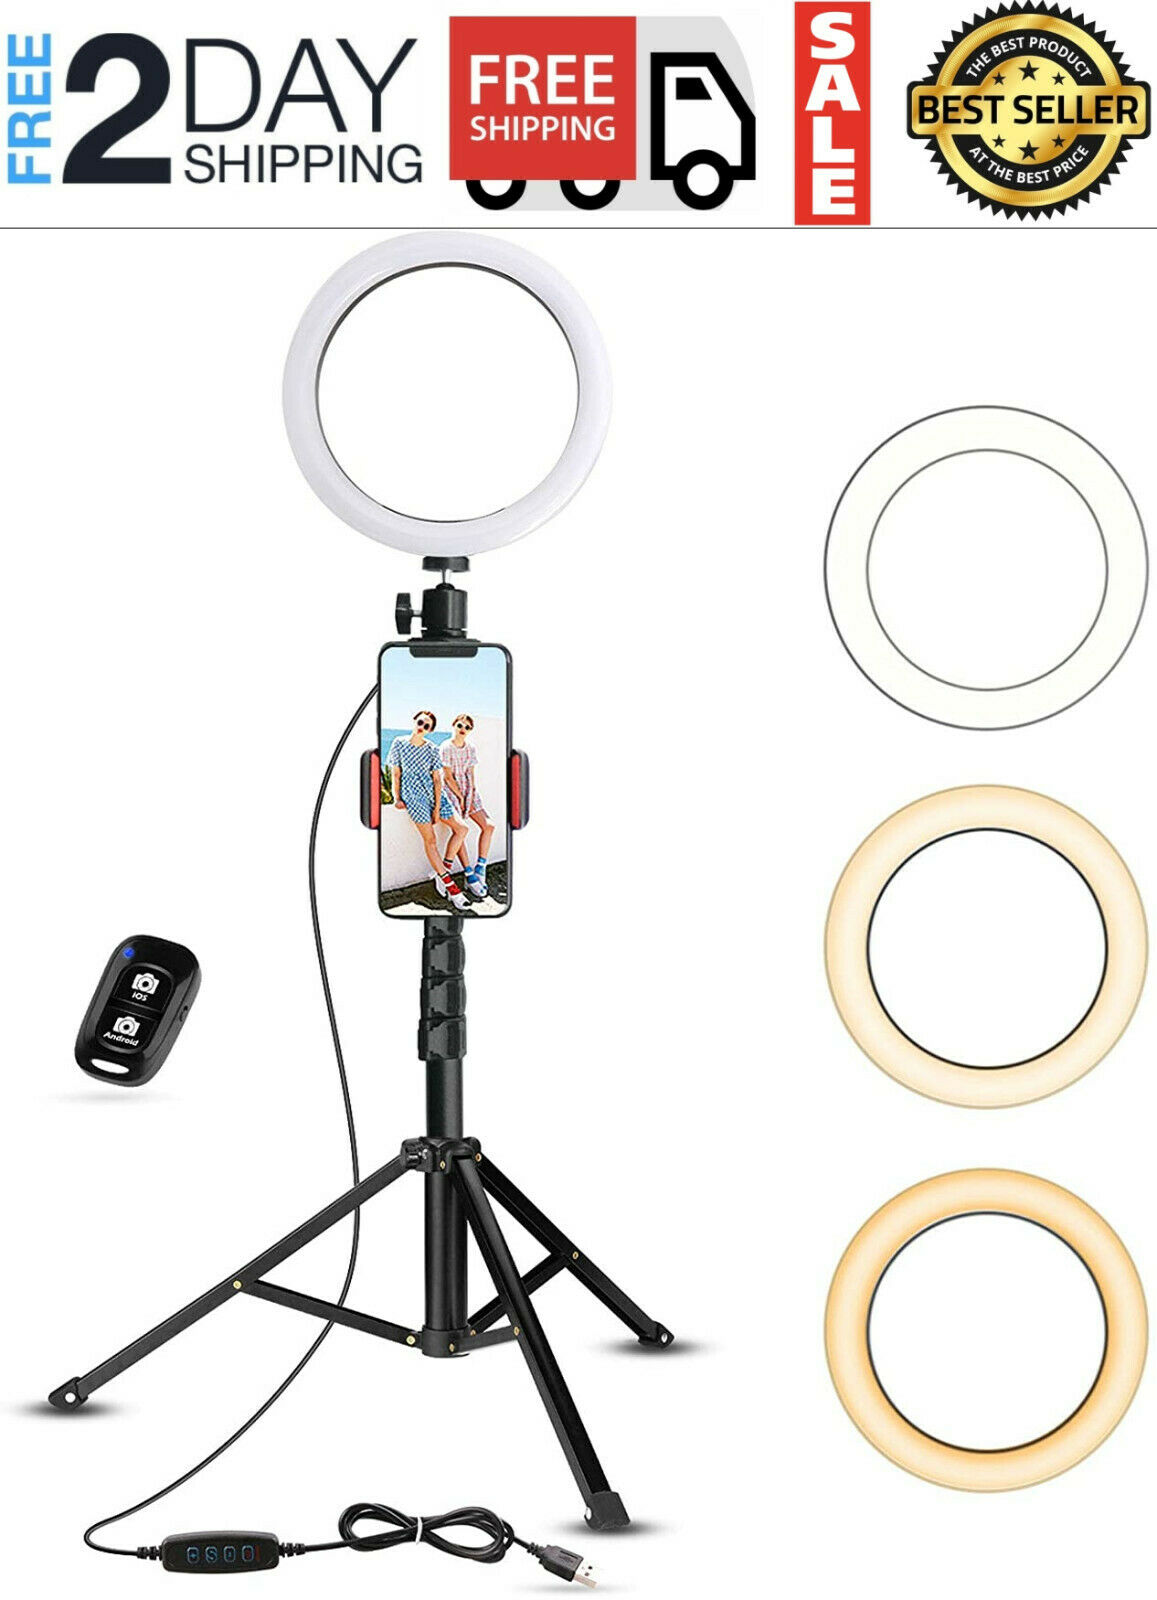 Anillo de luz LED para teléfono móvil portátil cámara fotografía iluminacio